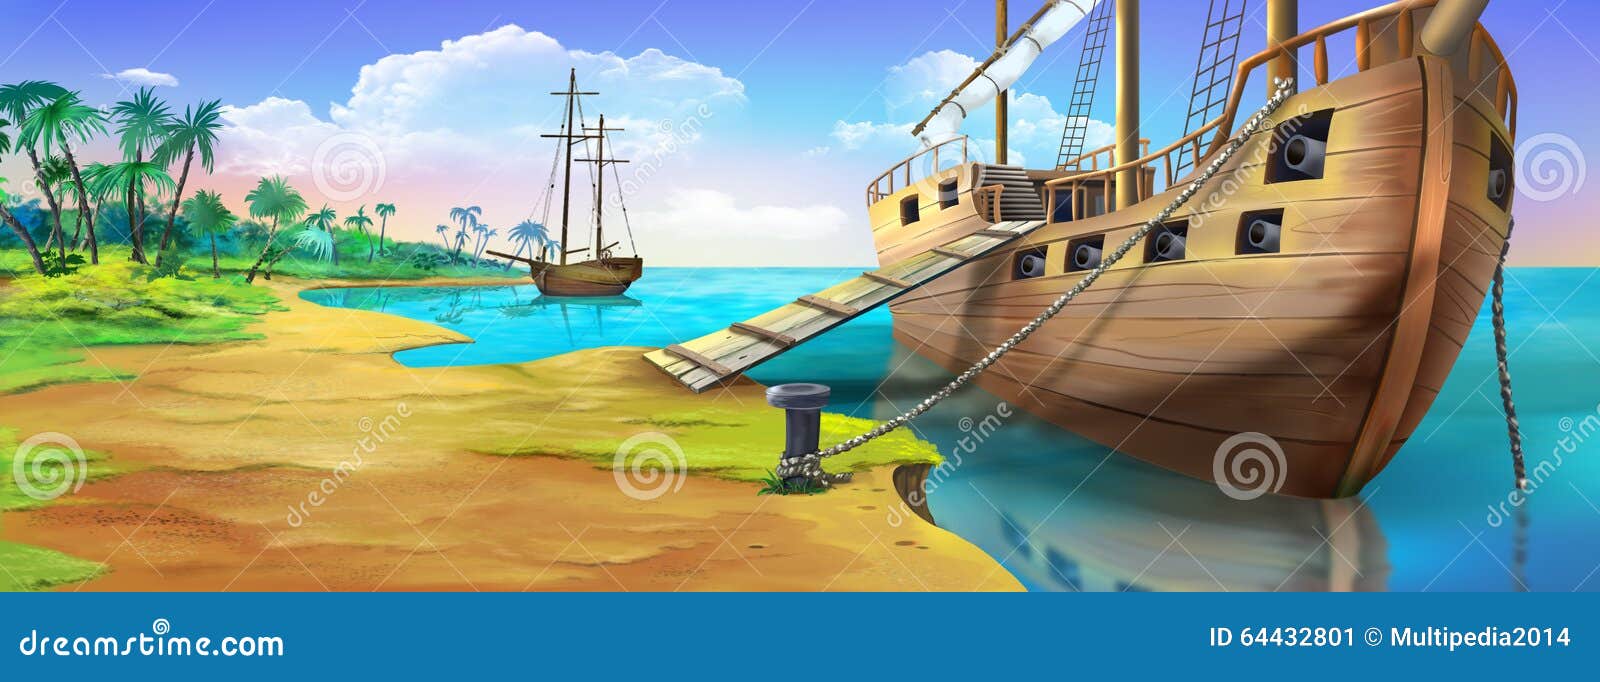 Barco Pirata En La Orilla De La Isla Del Pirata Opinión Del Panorama Stock  de ilustración - Ilustración de ensenada, cubierta: 64432801